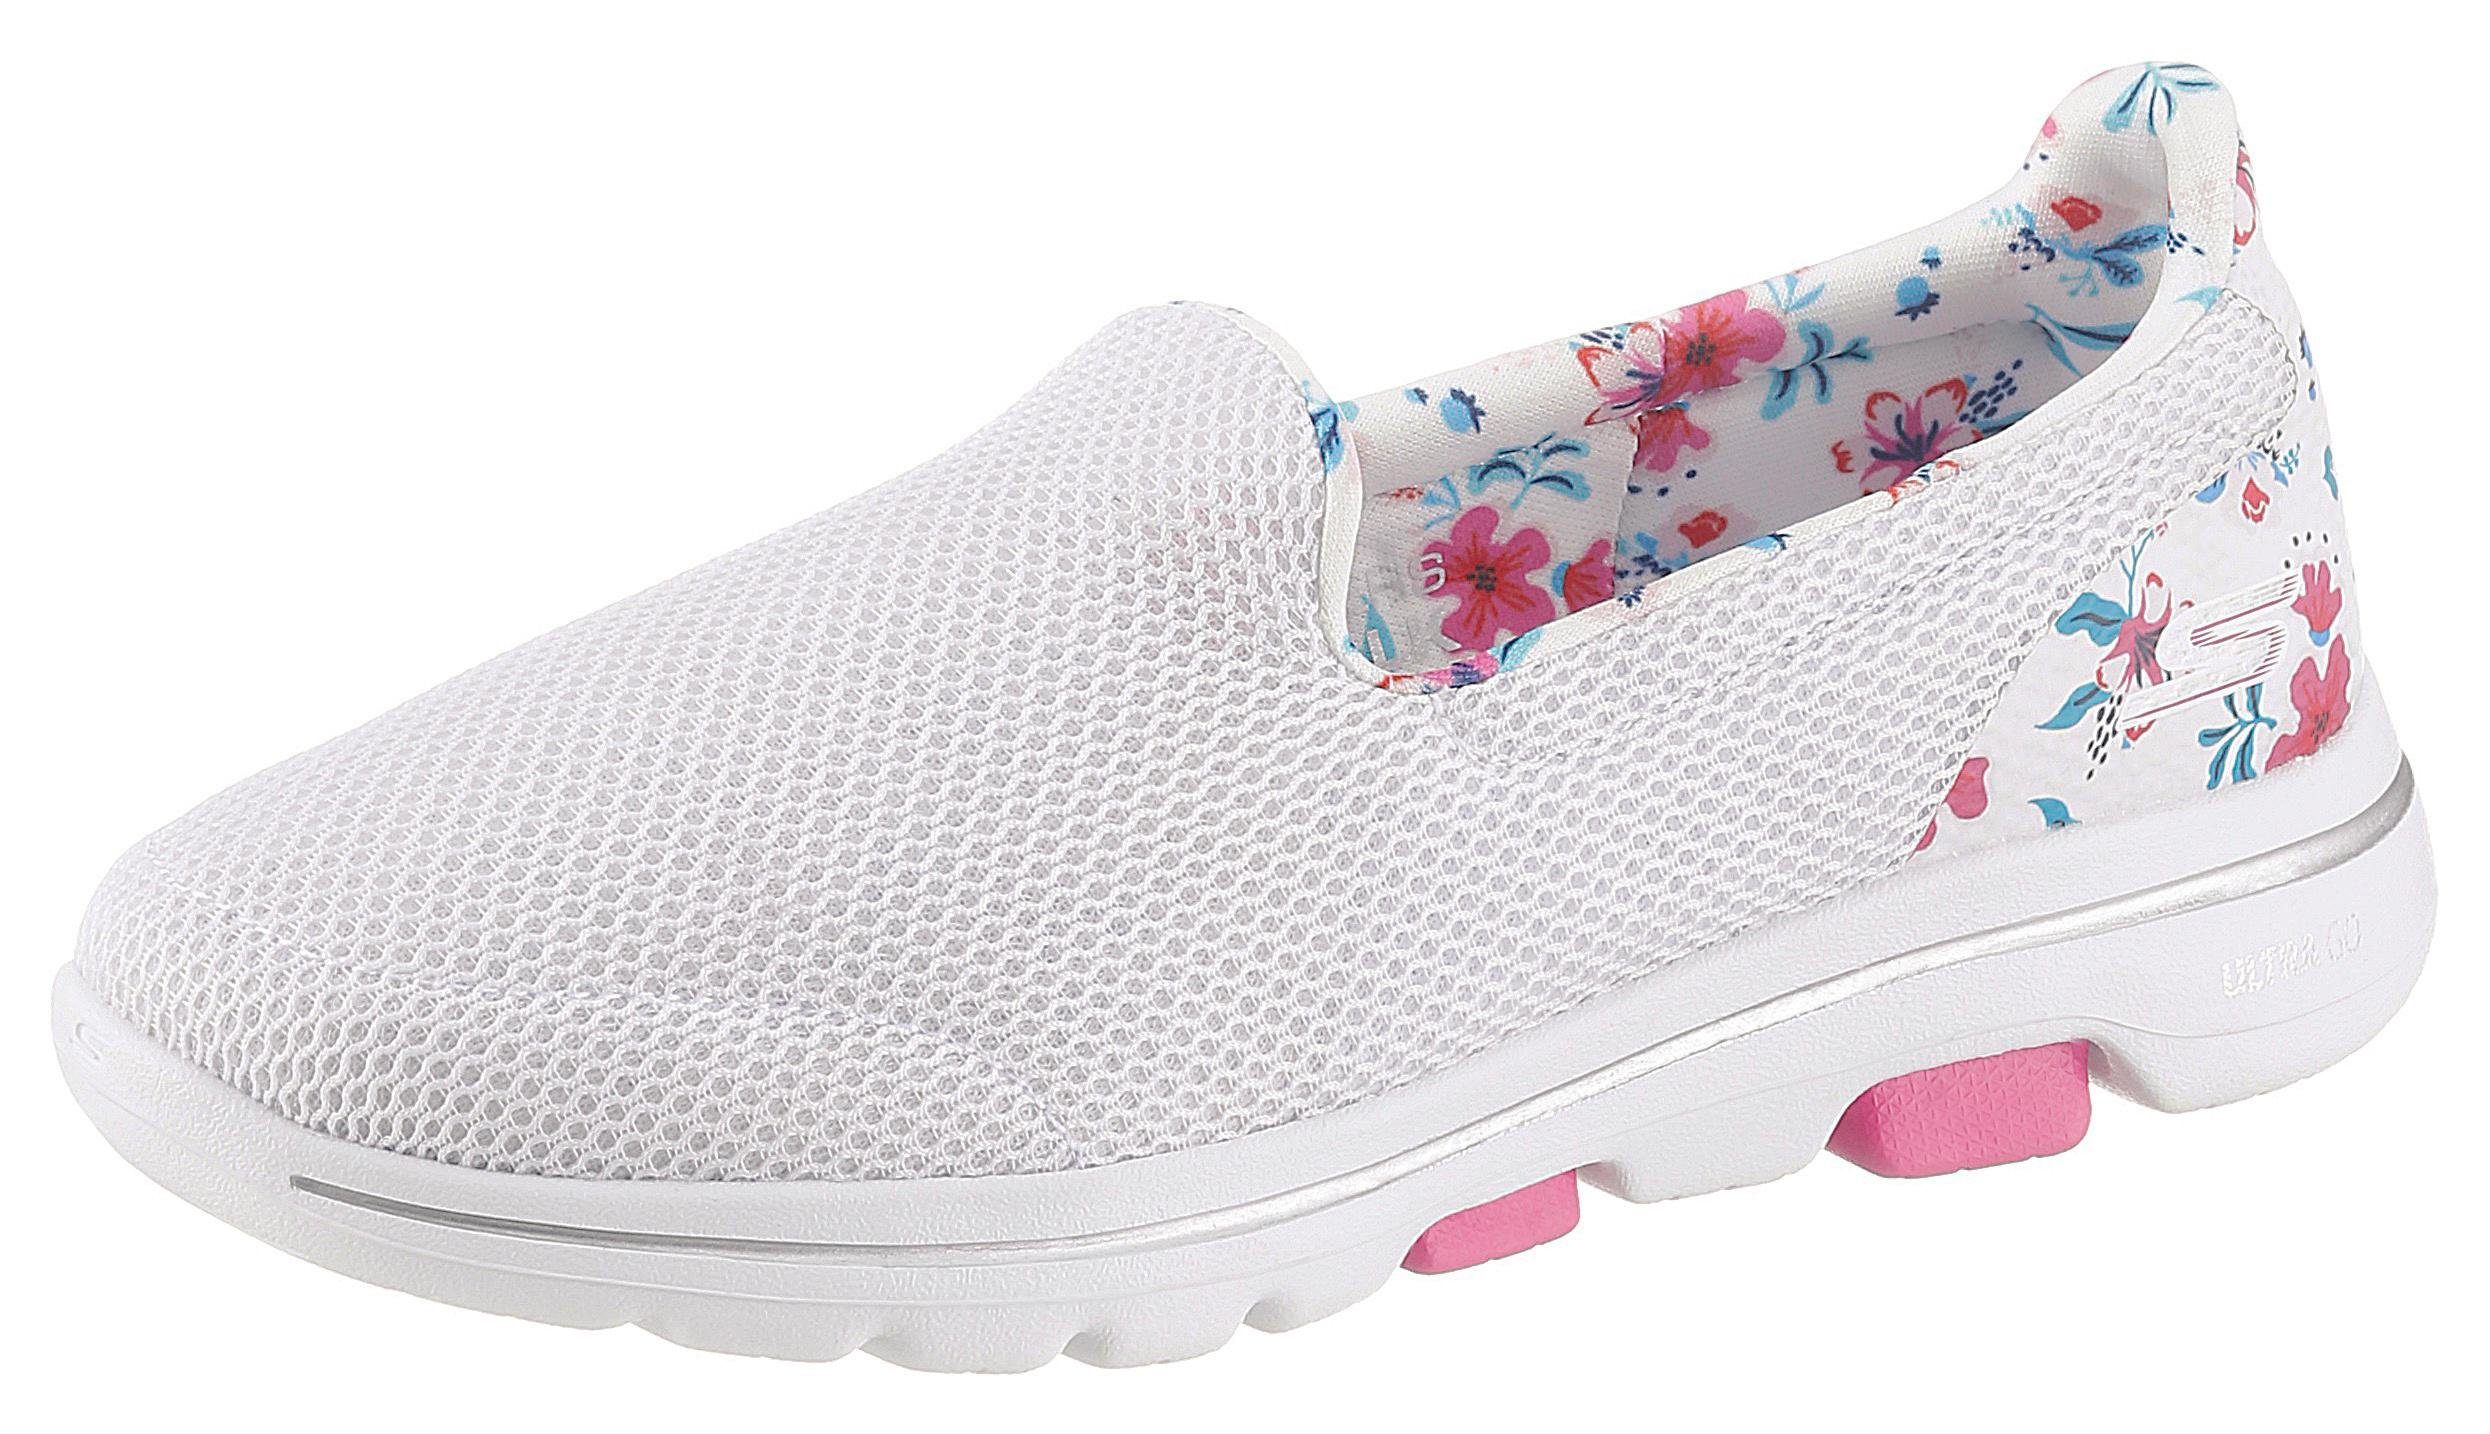 Skechers »Go Walk 5« Slip-On Sneaker mit Blumenprint online kaufen | OTTO